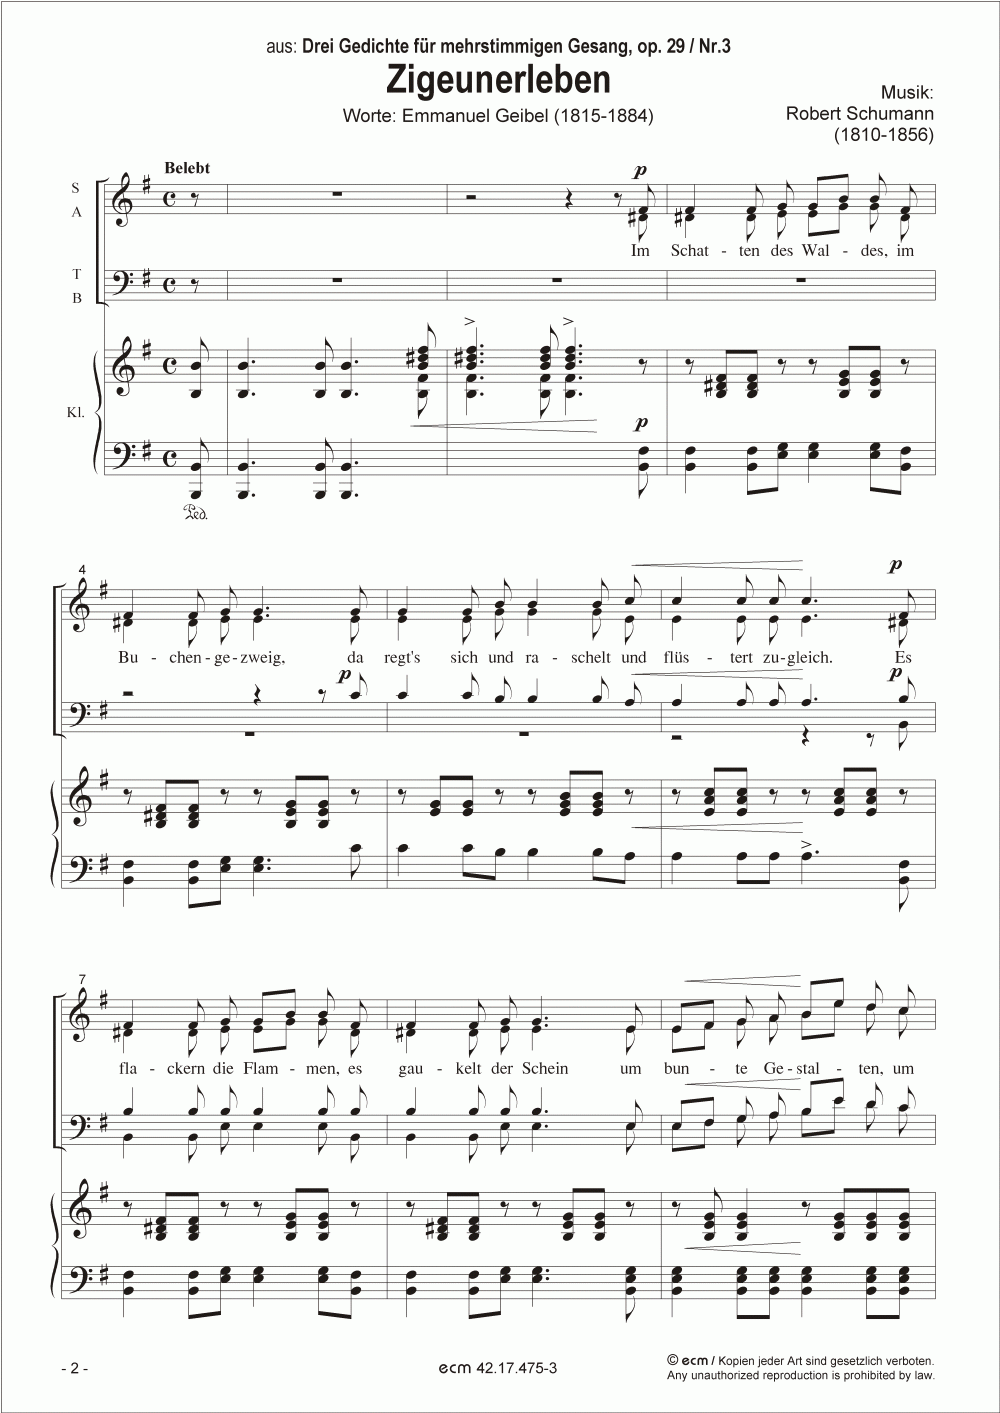 Zigeunerleben (op.29, Nr.3)